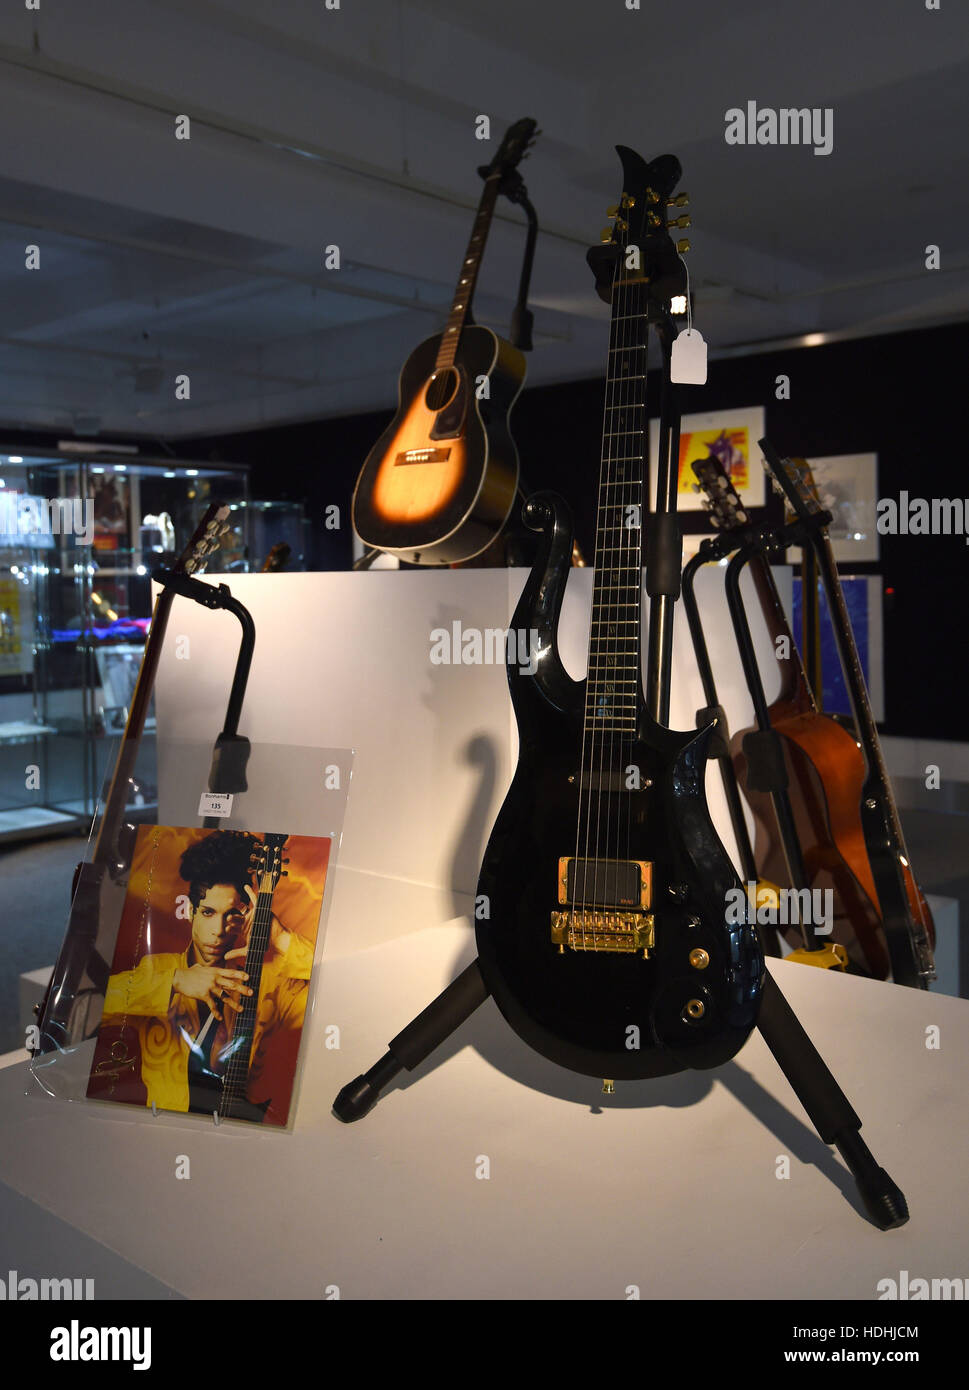 Una chitarra di proprietà dal Principe (anteriore) e una chitarra di proprietà di Jimi Hendrix (al centro della schiena) sul display davanti al la memorabilia di intrattenimento Vendita a Bonhams a Knightsbridge, Londra questa settimana. Foto Stock